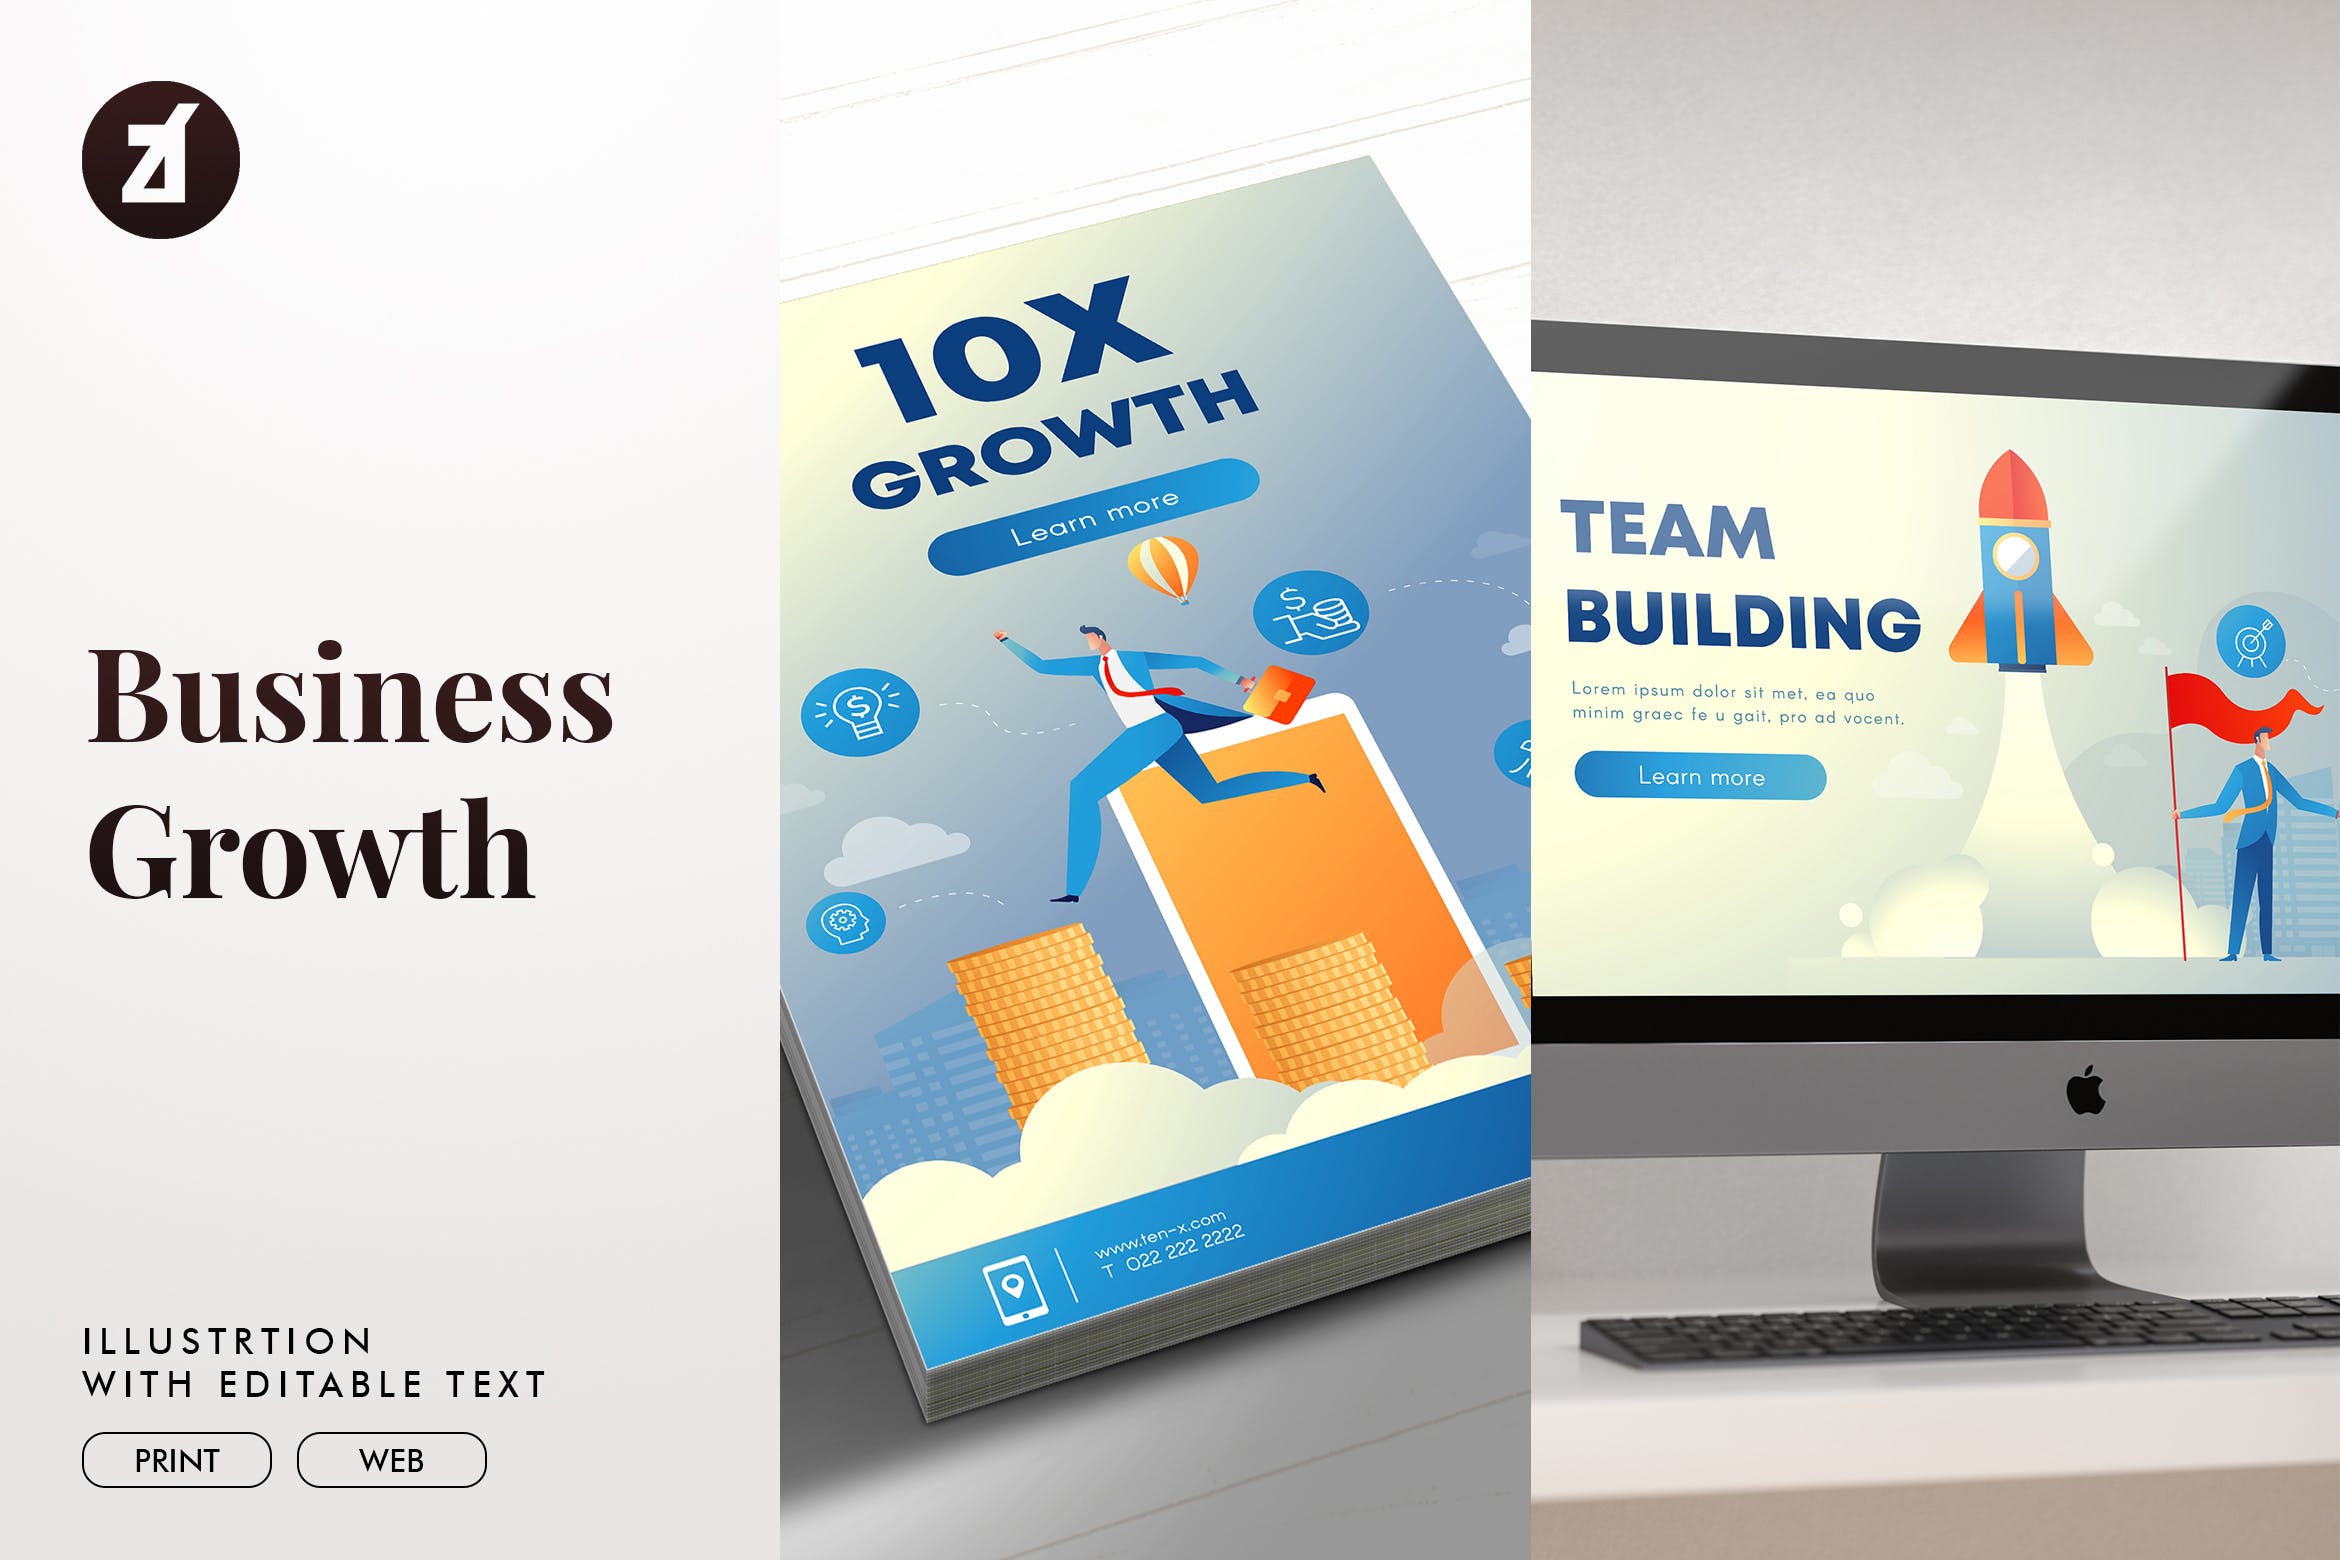 业务增长企业主题矢量插画素材 Business growth illustration with text layout插图